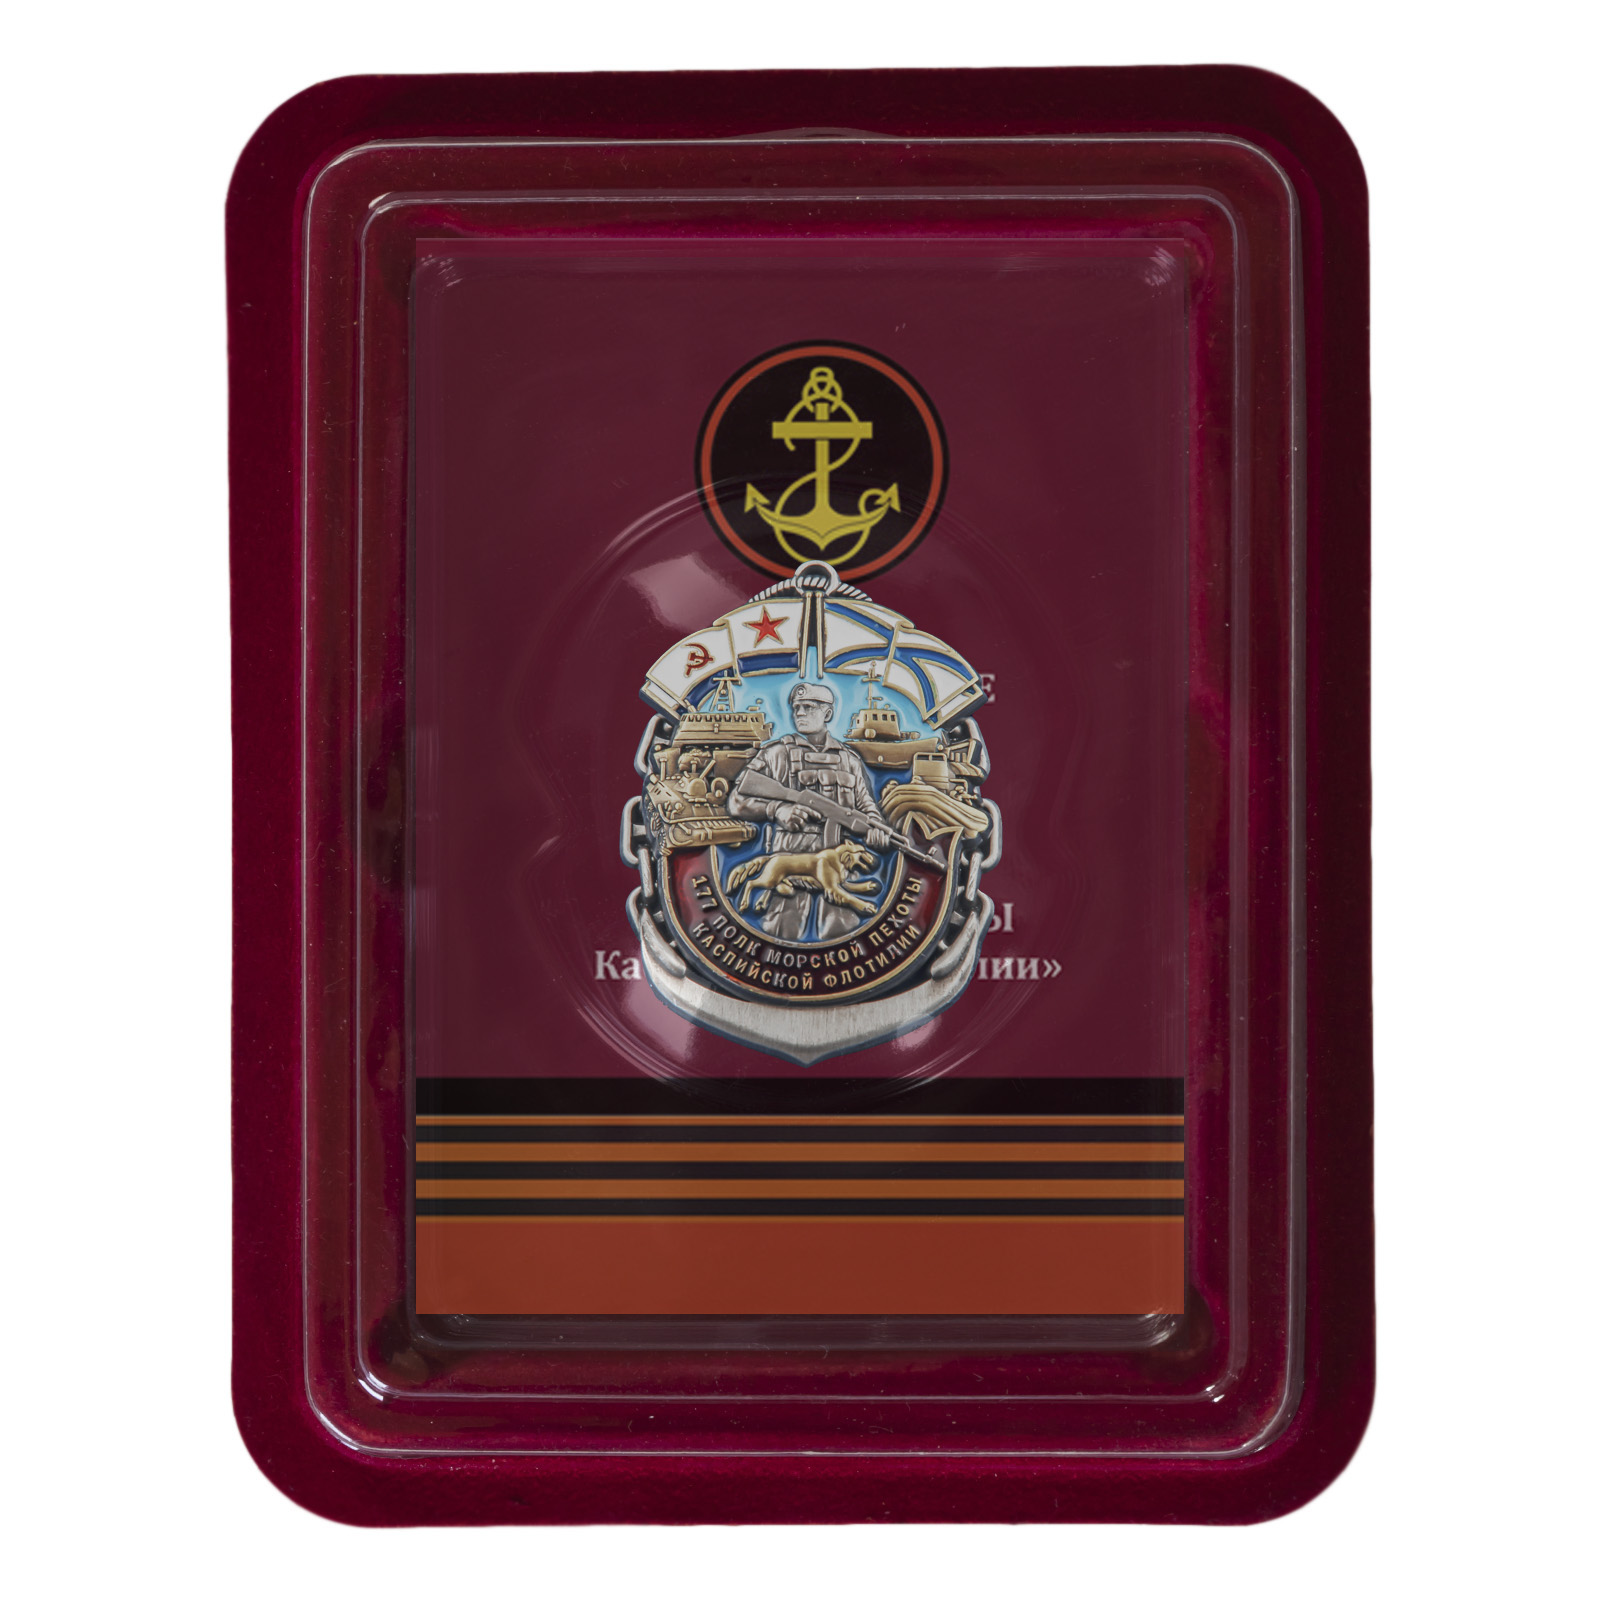 Купить нагрудный знак 177-й полк морской пехоты Каспийской флотилии онлайн